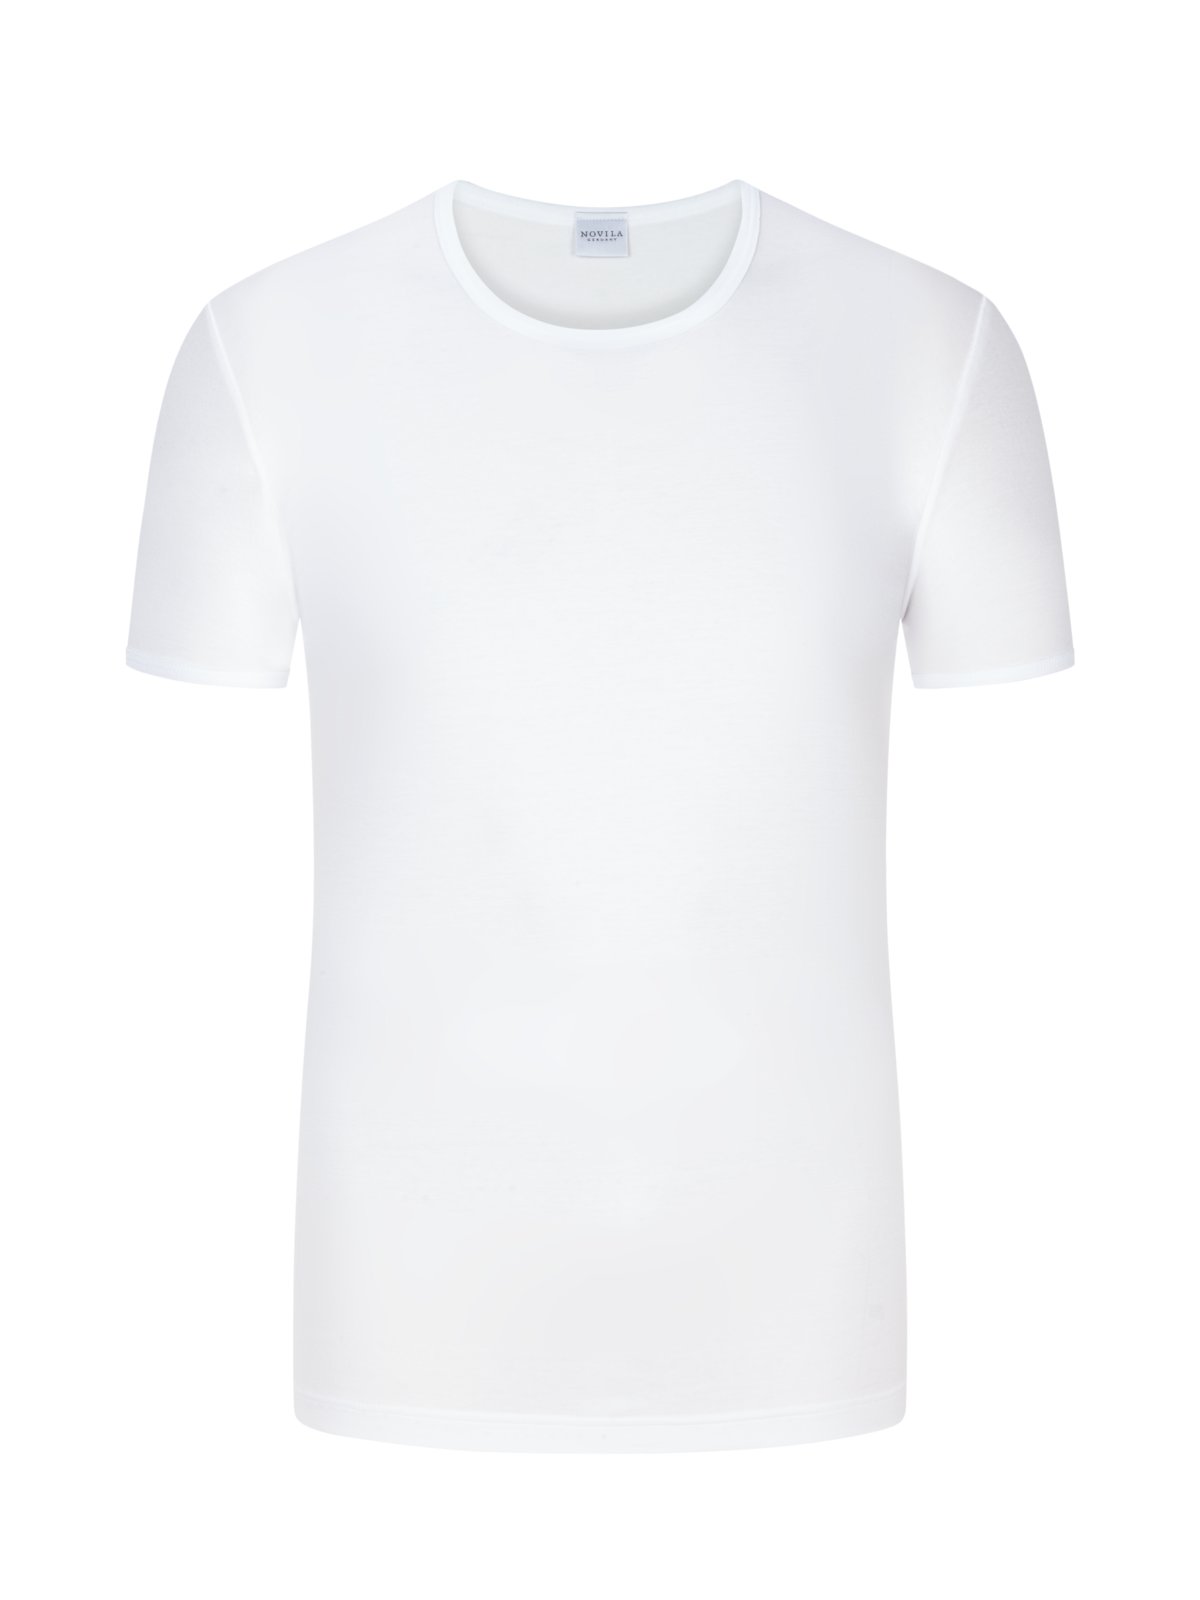 Novila T-Shirt Natural Comfort in Interlock-Qualität